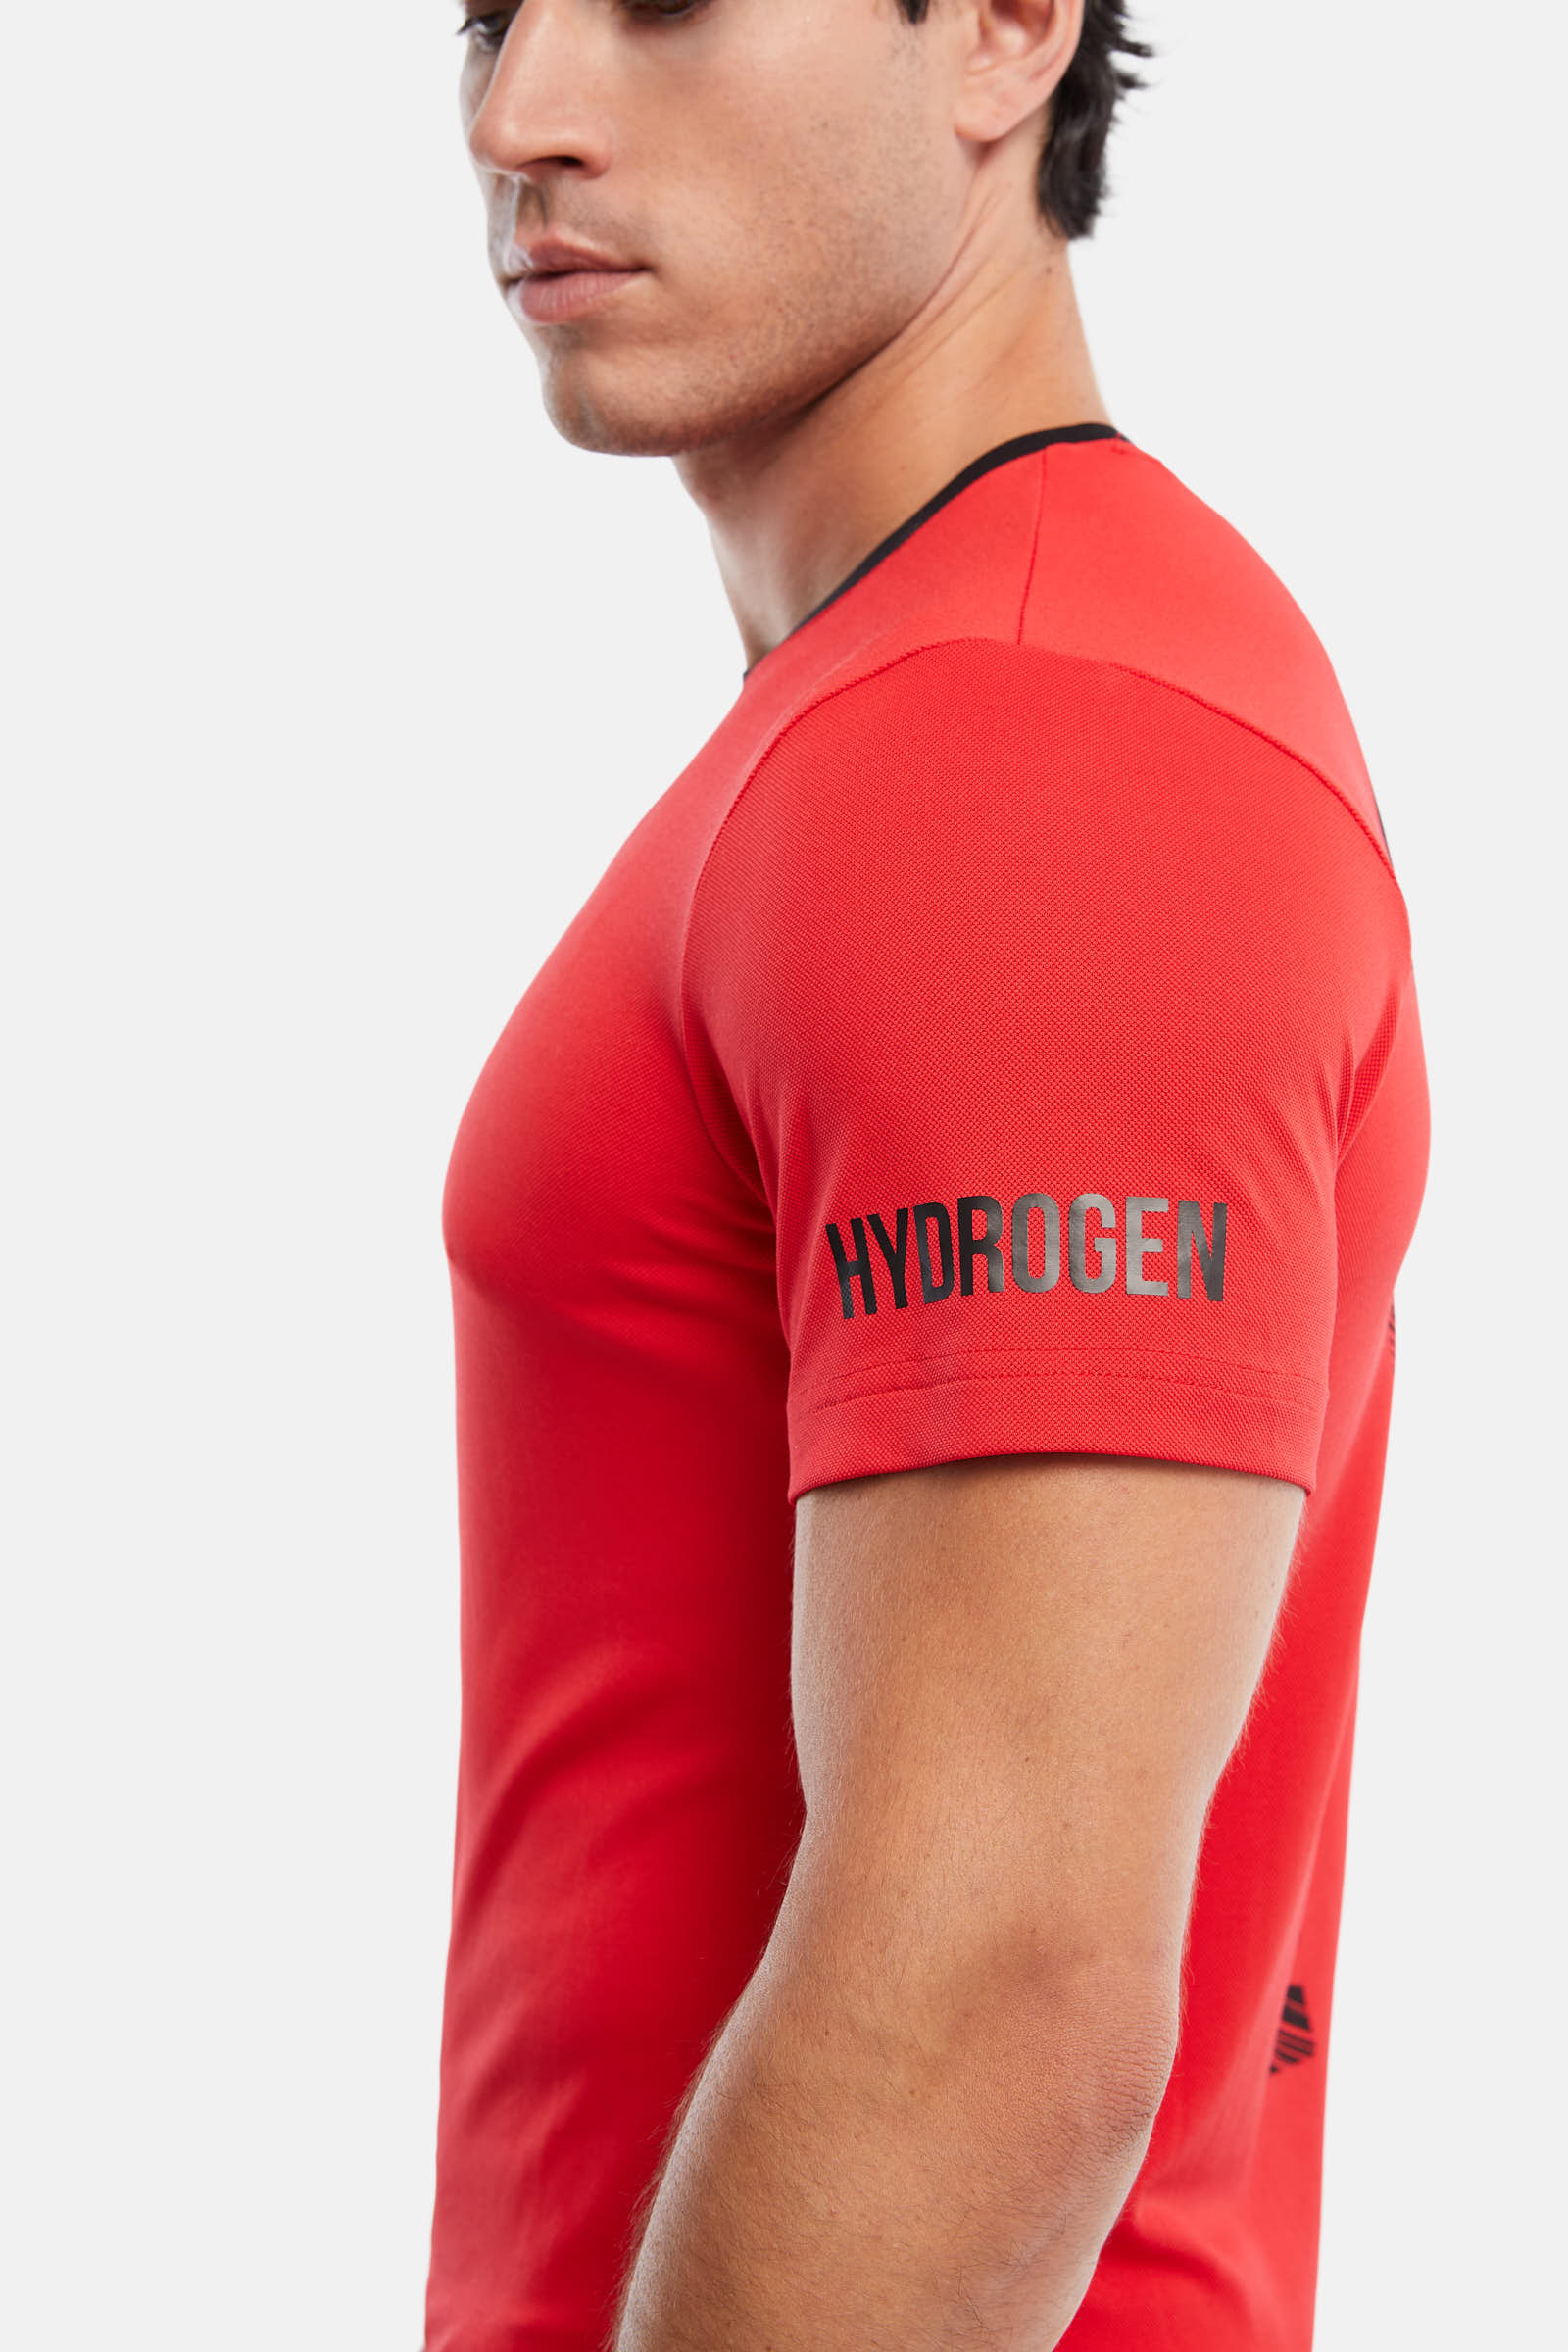 CRAZY RACKET TECH T-SHIRT - RED - Hydrogen - Luxury Sportwear